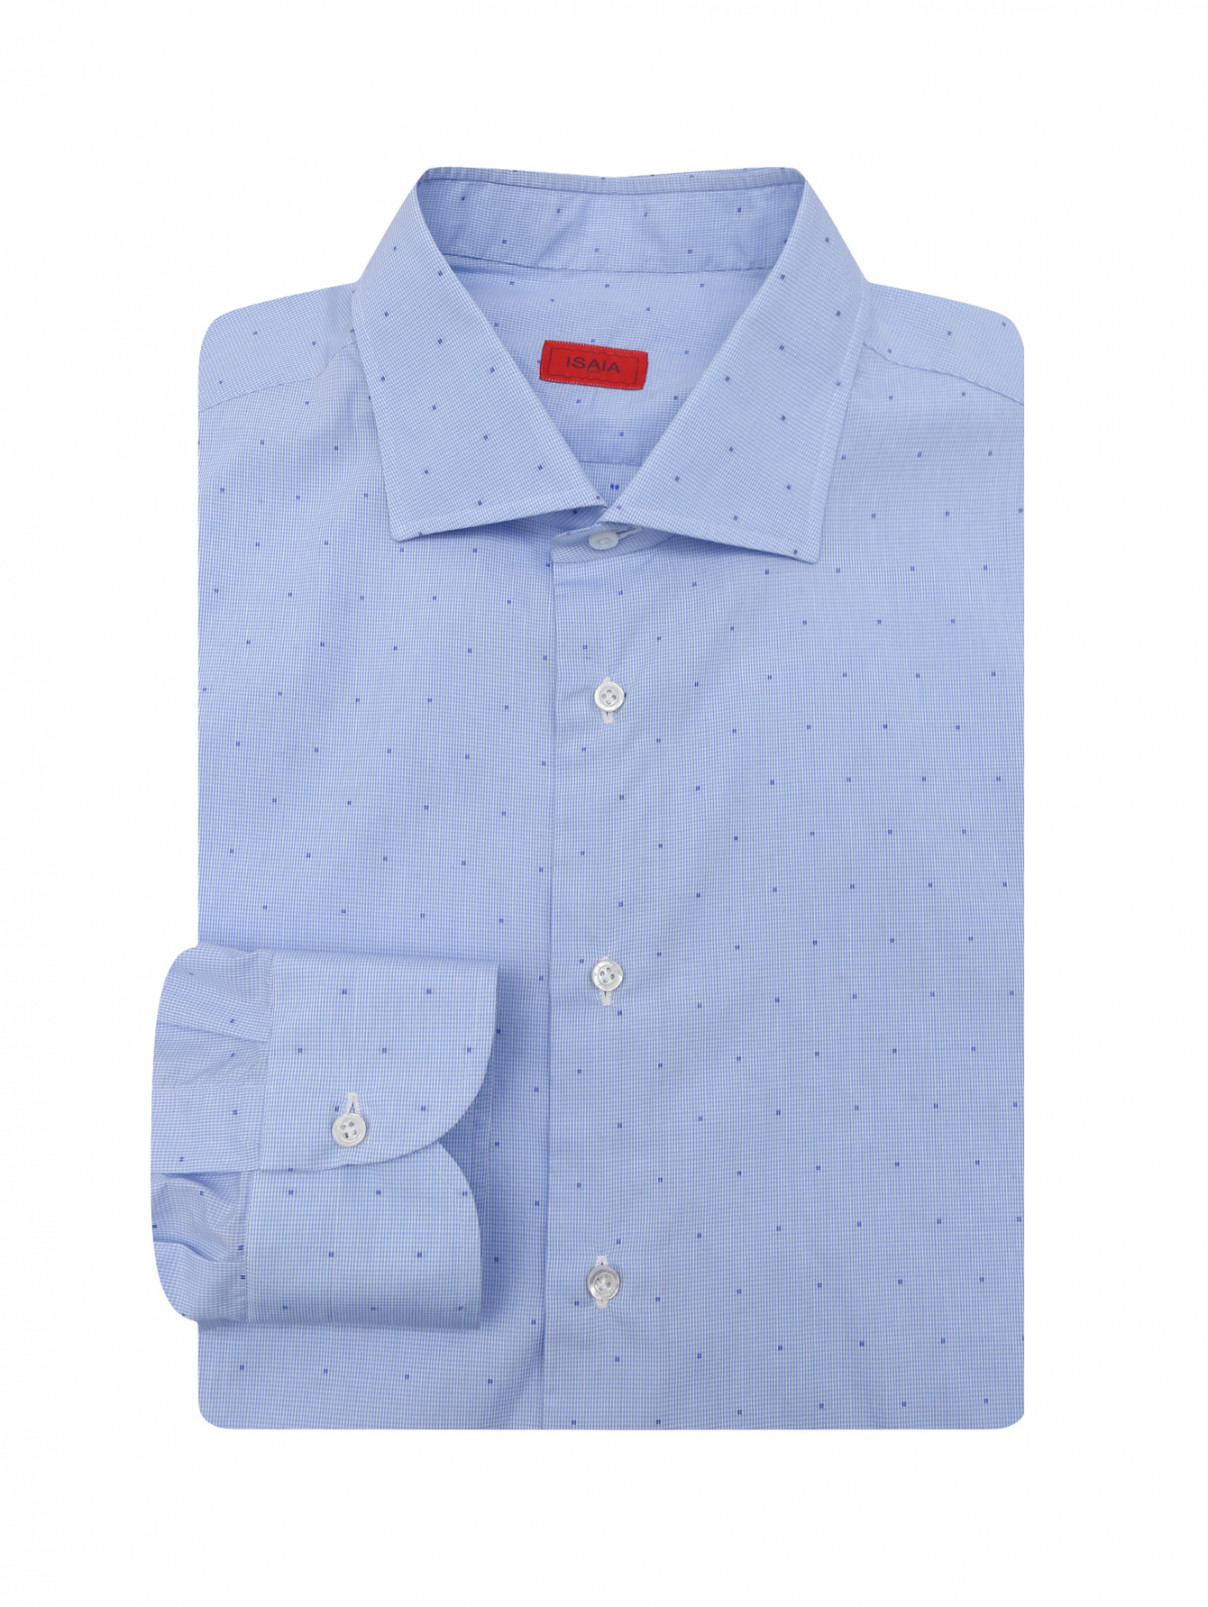 Рубашка из льна с принтом Isaia  –  Общий вид  – Цвет:  Синий